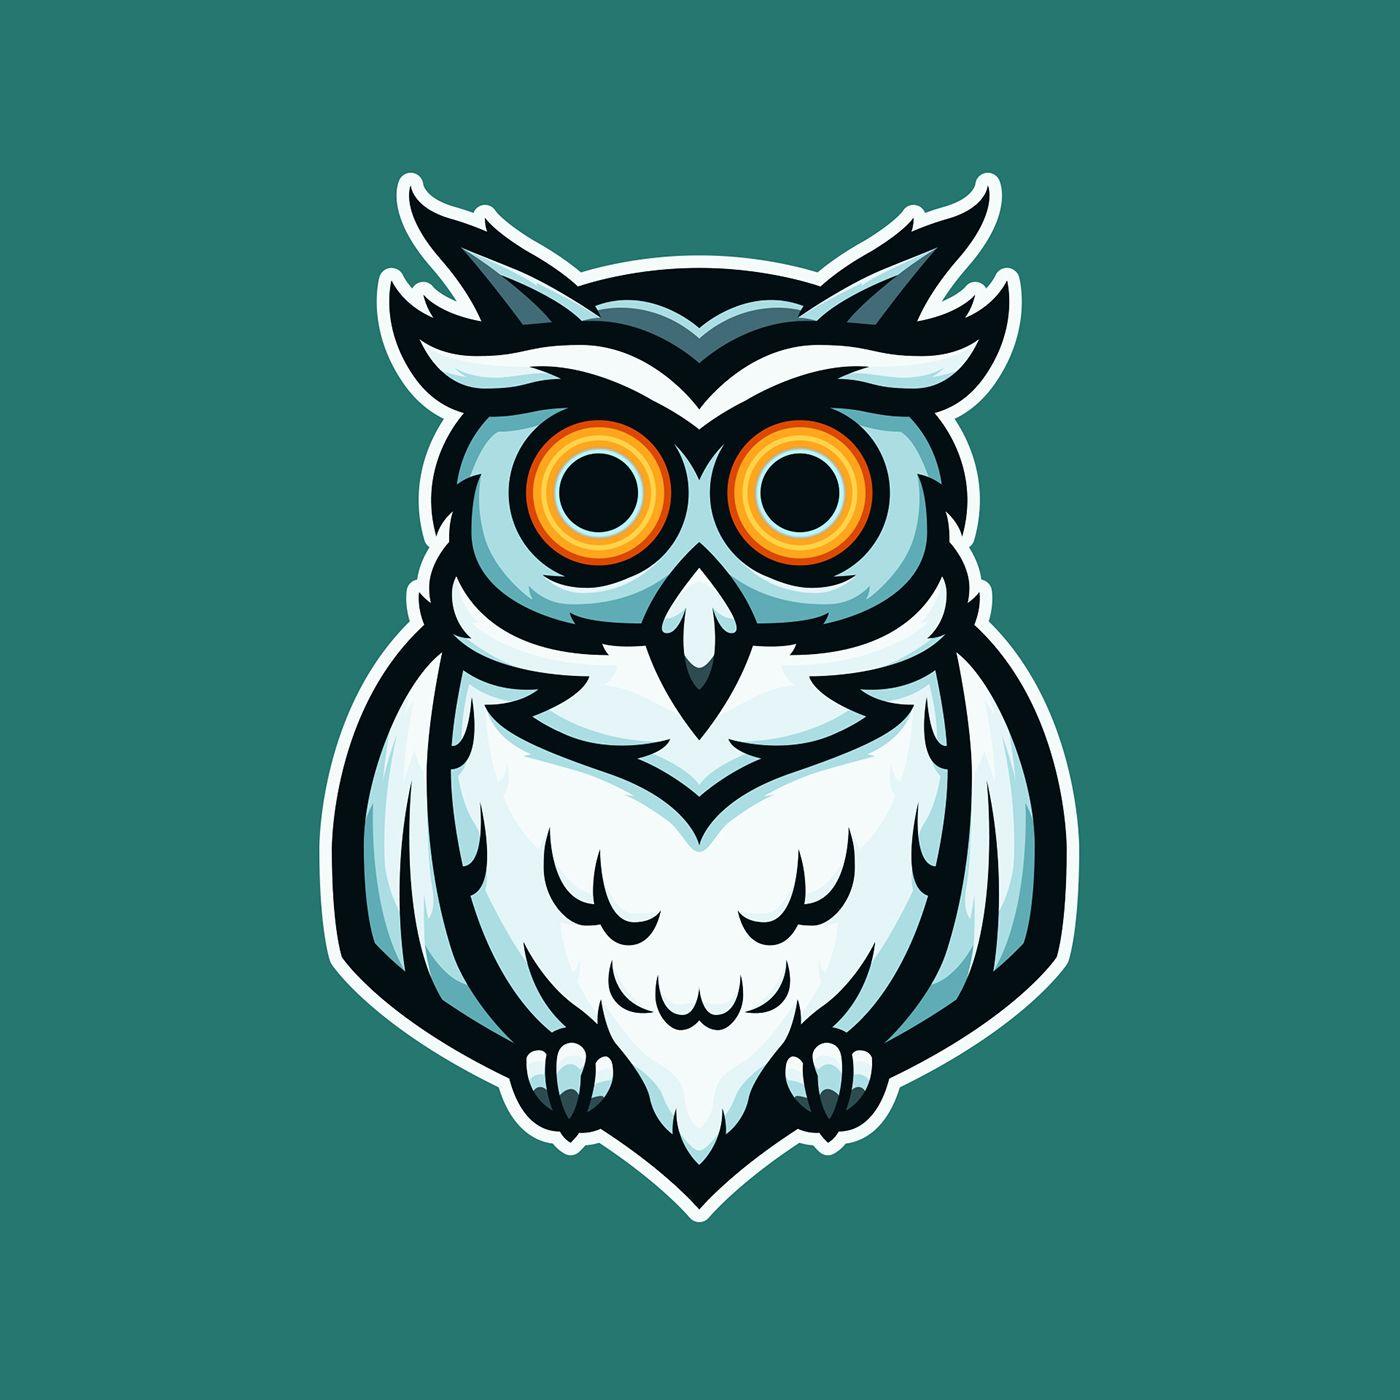 owl-mascot-logo-logodix